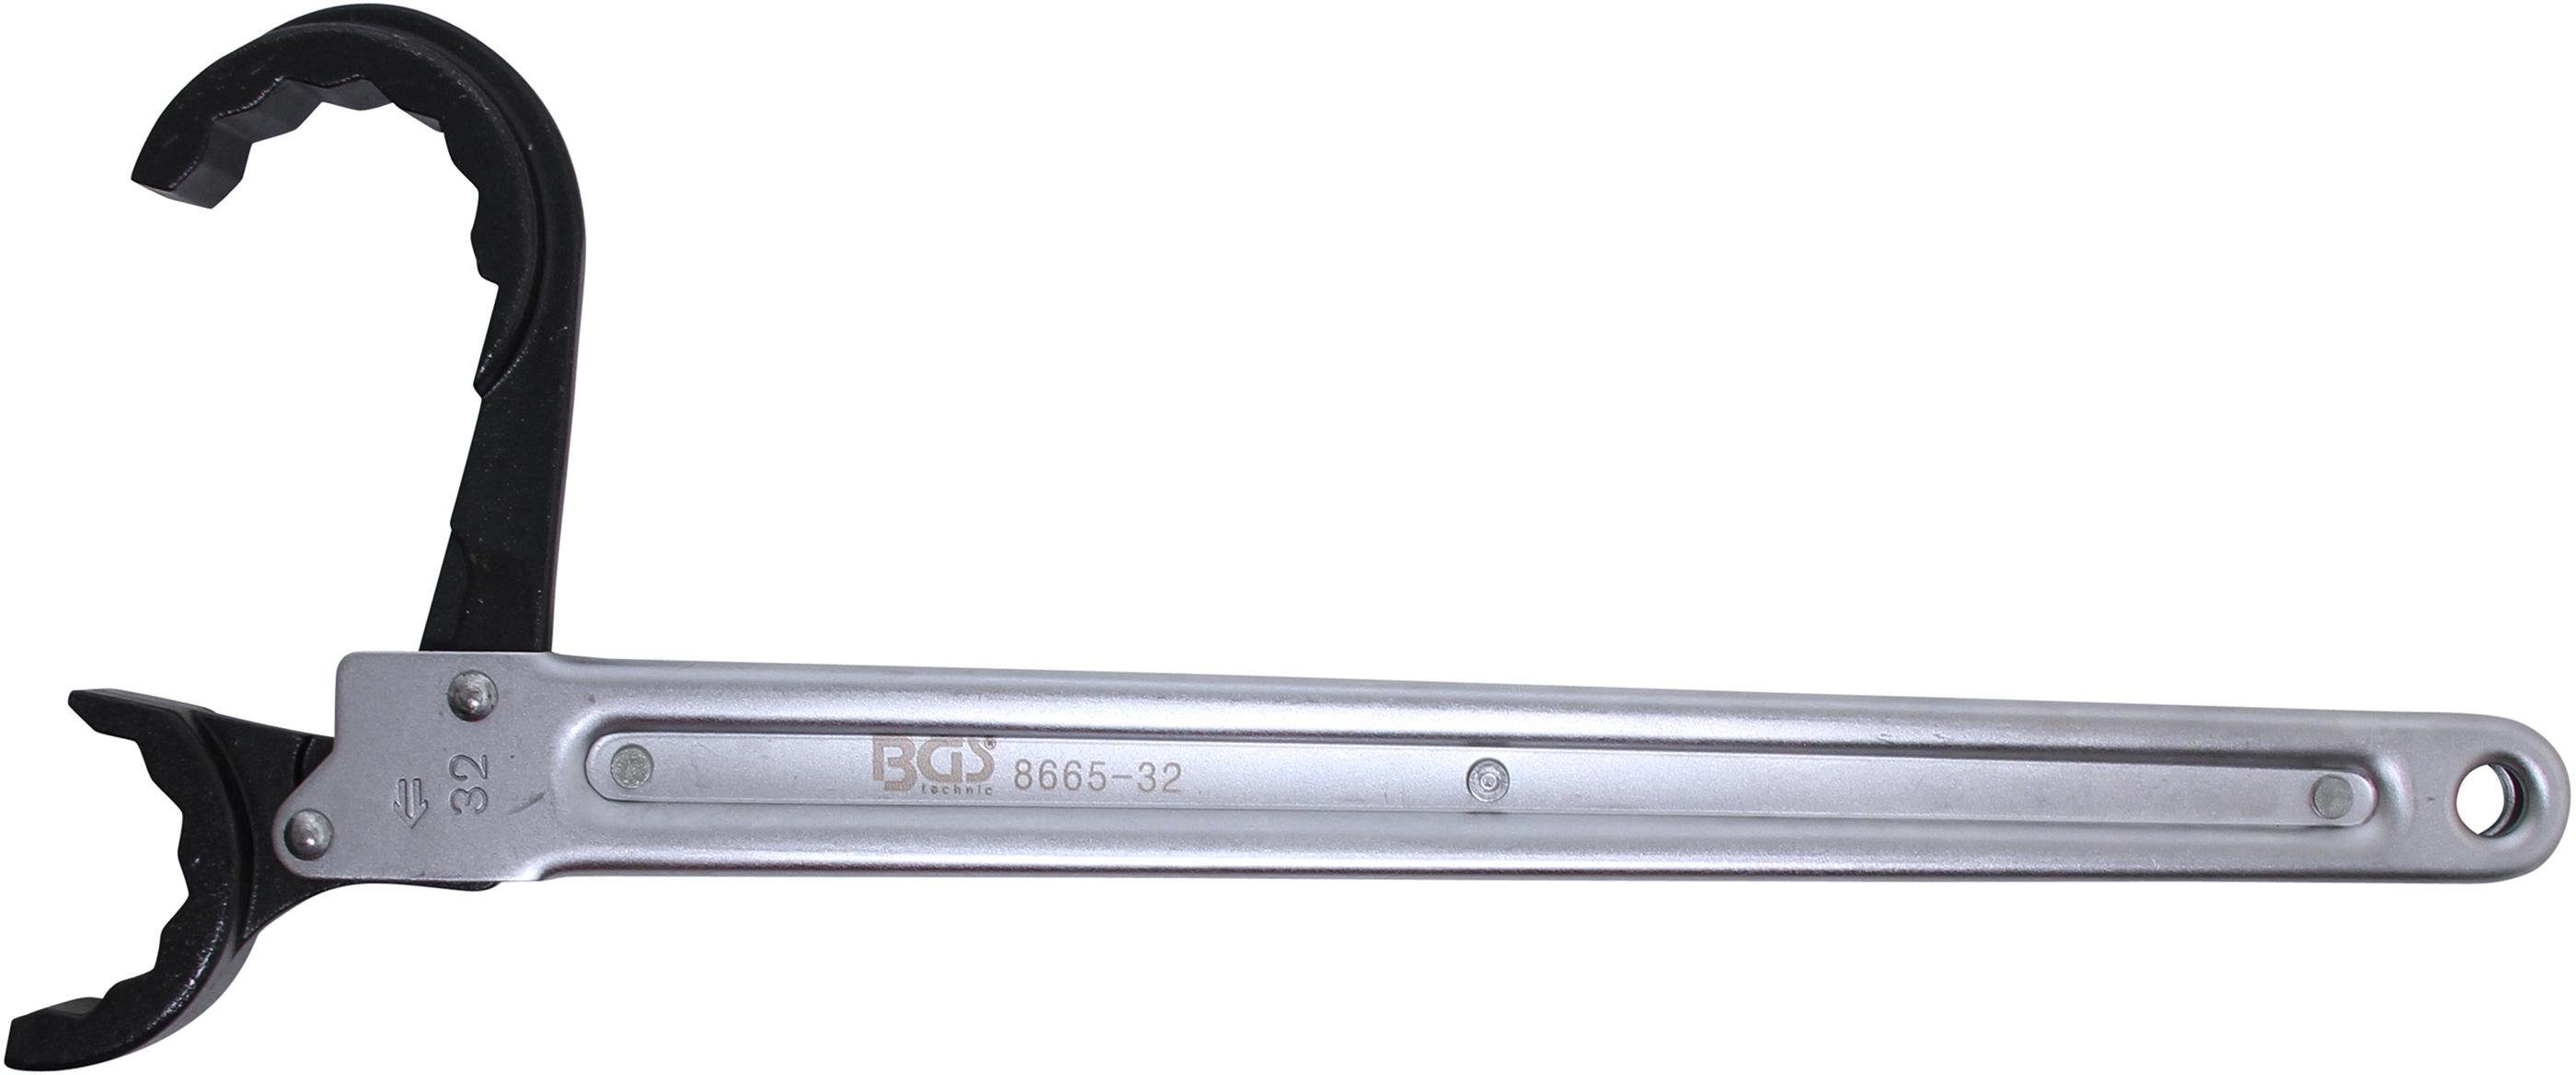 BGS technic Ratsche Leitungs-Ratschenschlüssel, 32 mm